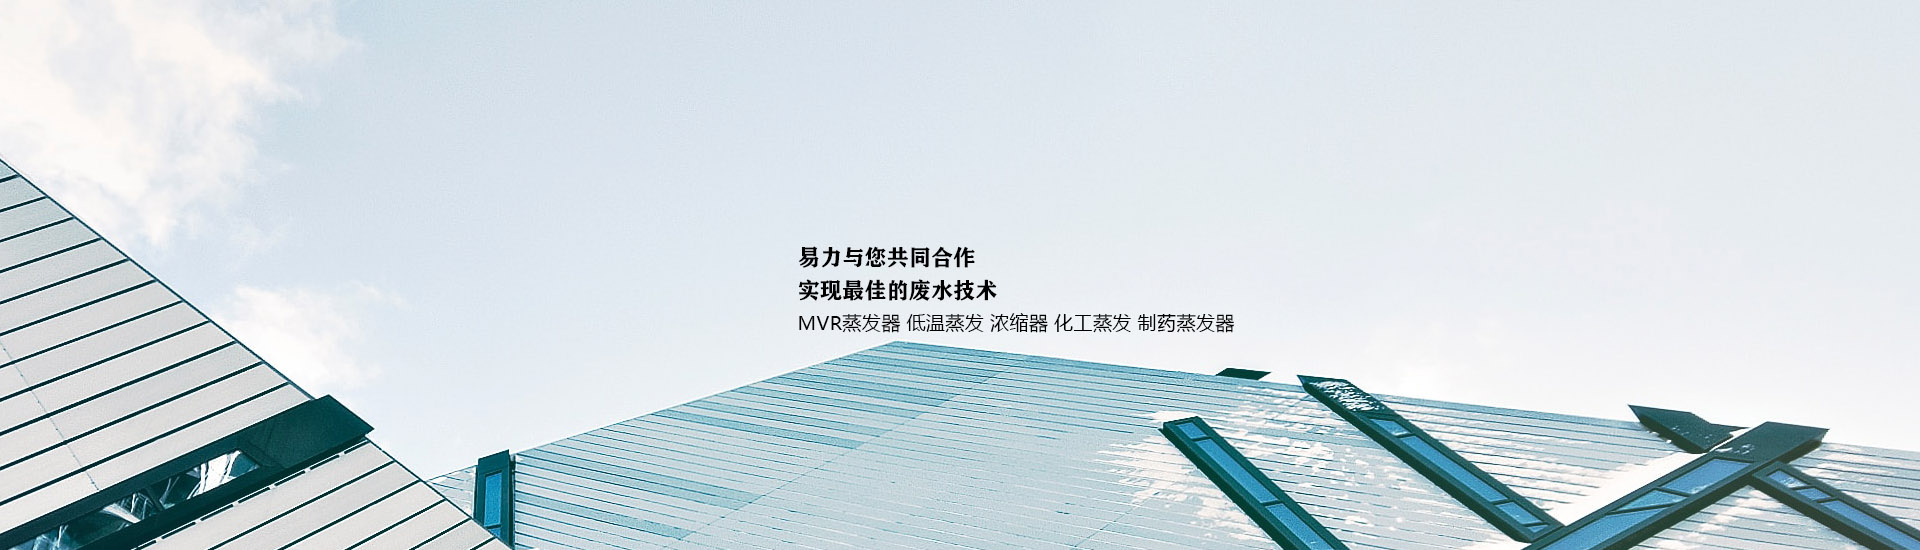 MVR蒸发系统供应商